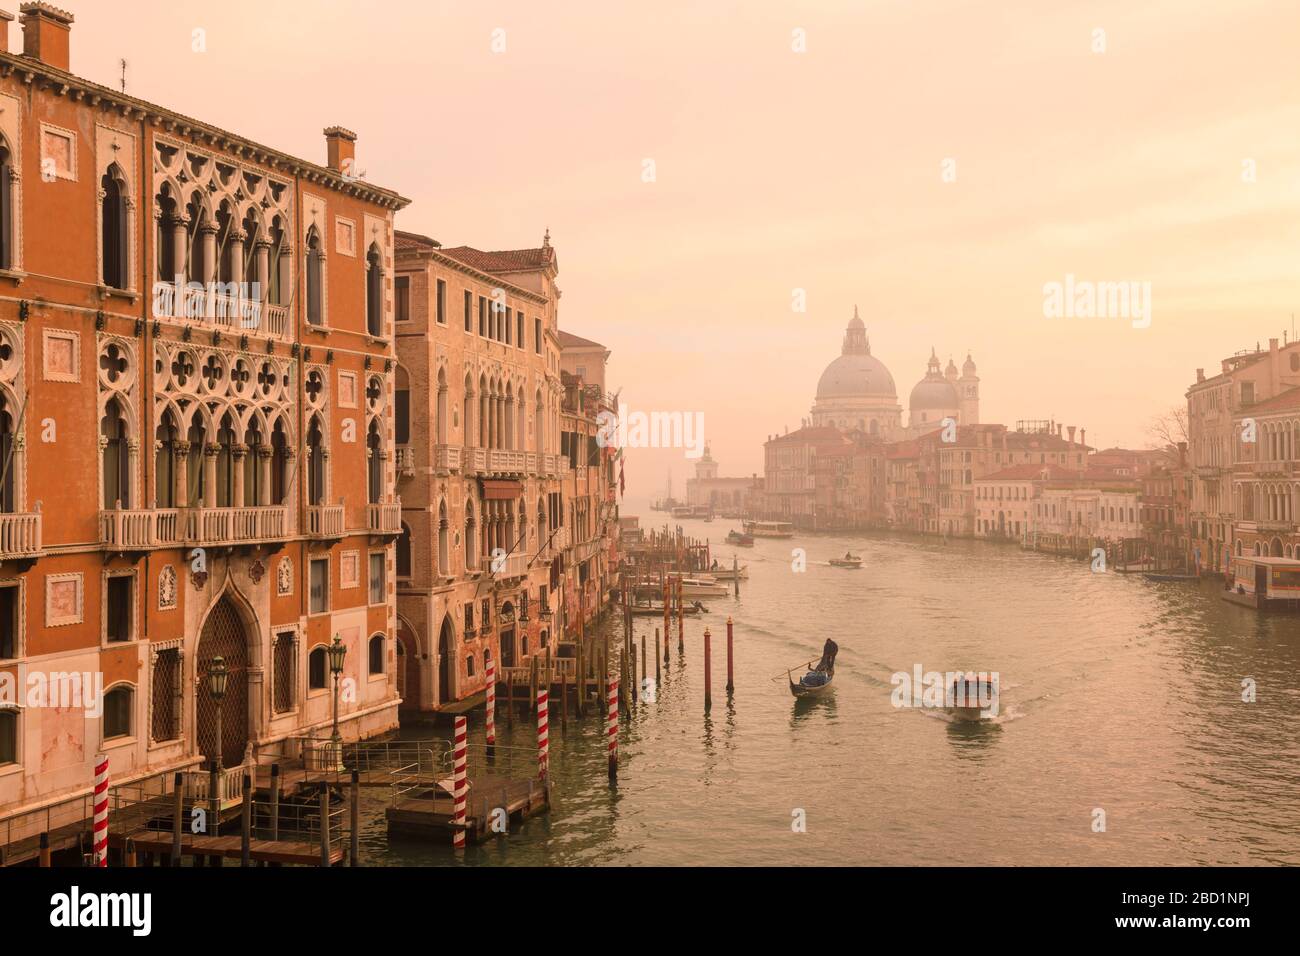 Magnifique Grand Canal, brouillard d'hiver, lumière dorée du matin, Santa Maria della Salute, Venise, site classé au patrimoine mondial de l'UNESCO, Vénétie, Italie, Europe Banque D'Images